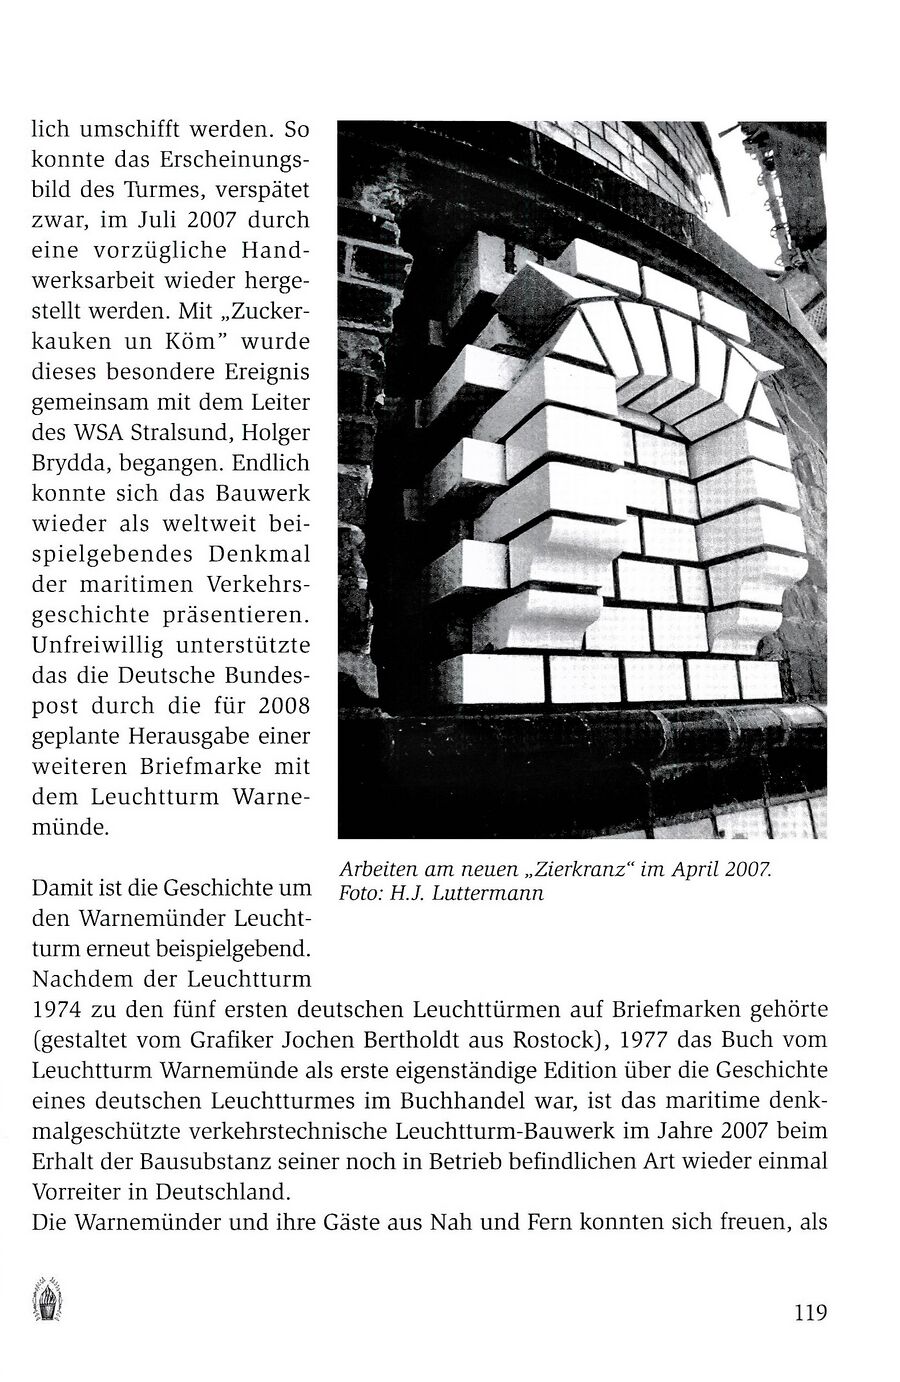 wmde Leuchtturm Luttermann 2013 119